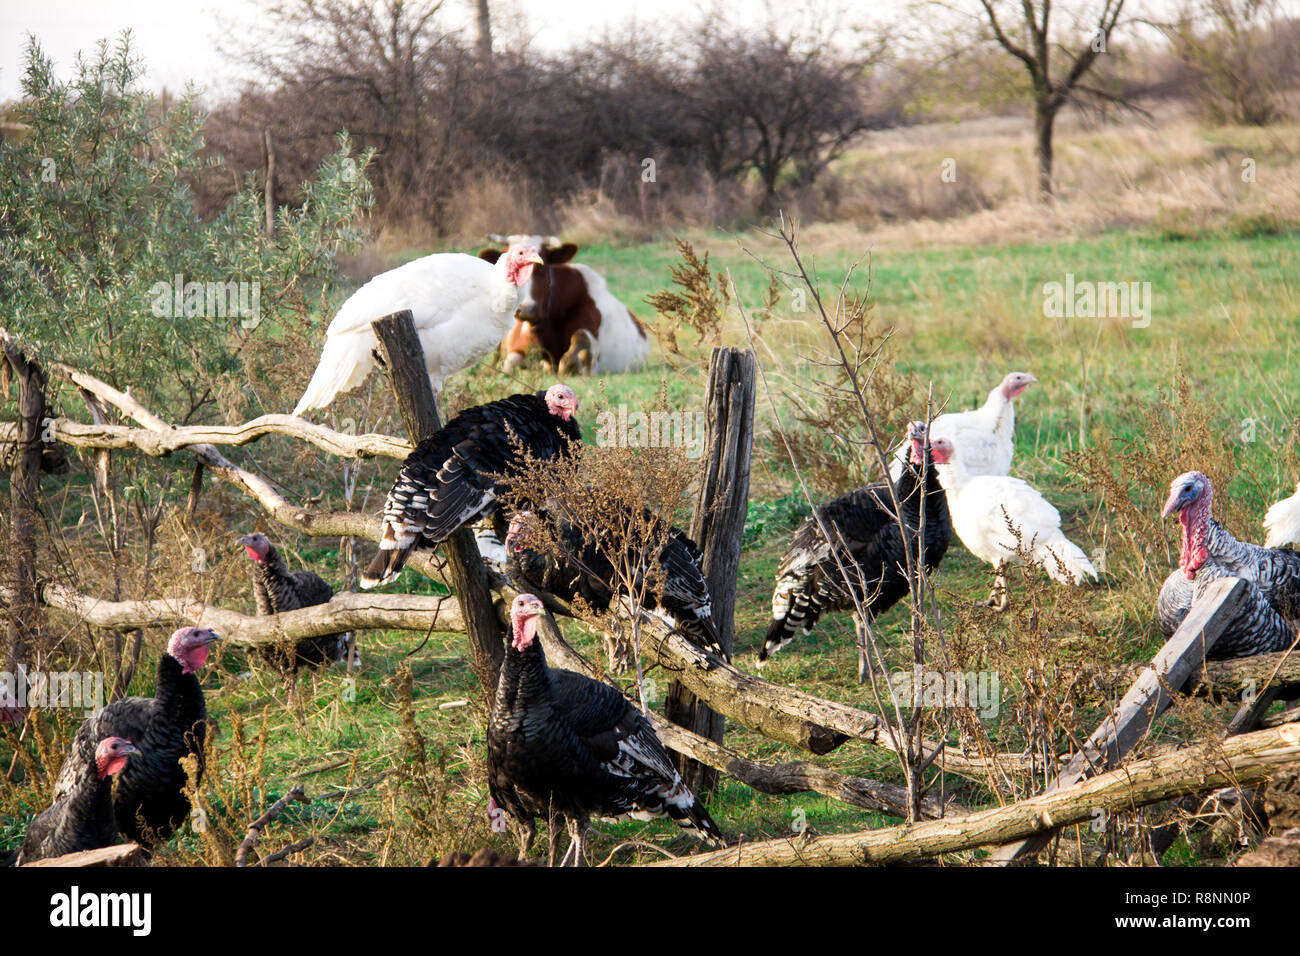 turkeys graze near a wooden fence in the village Stock Photo